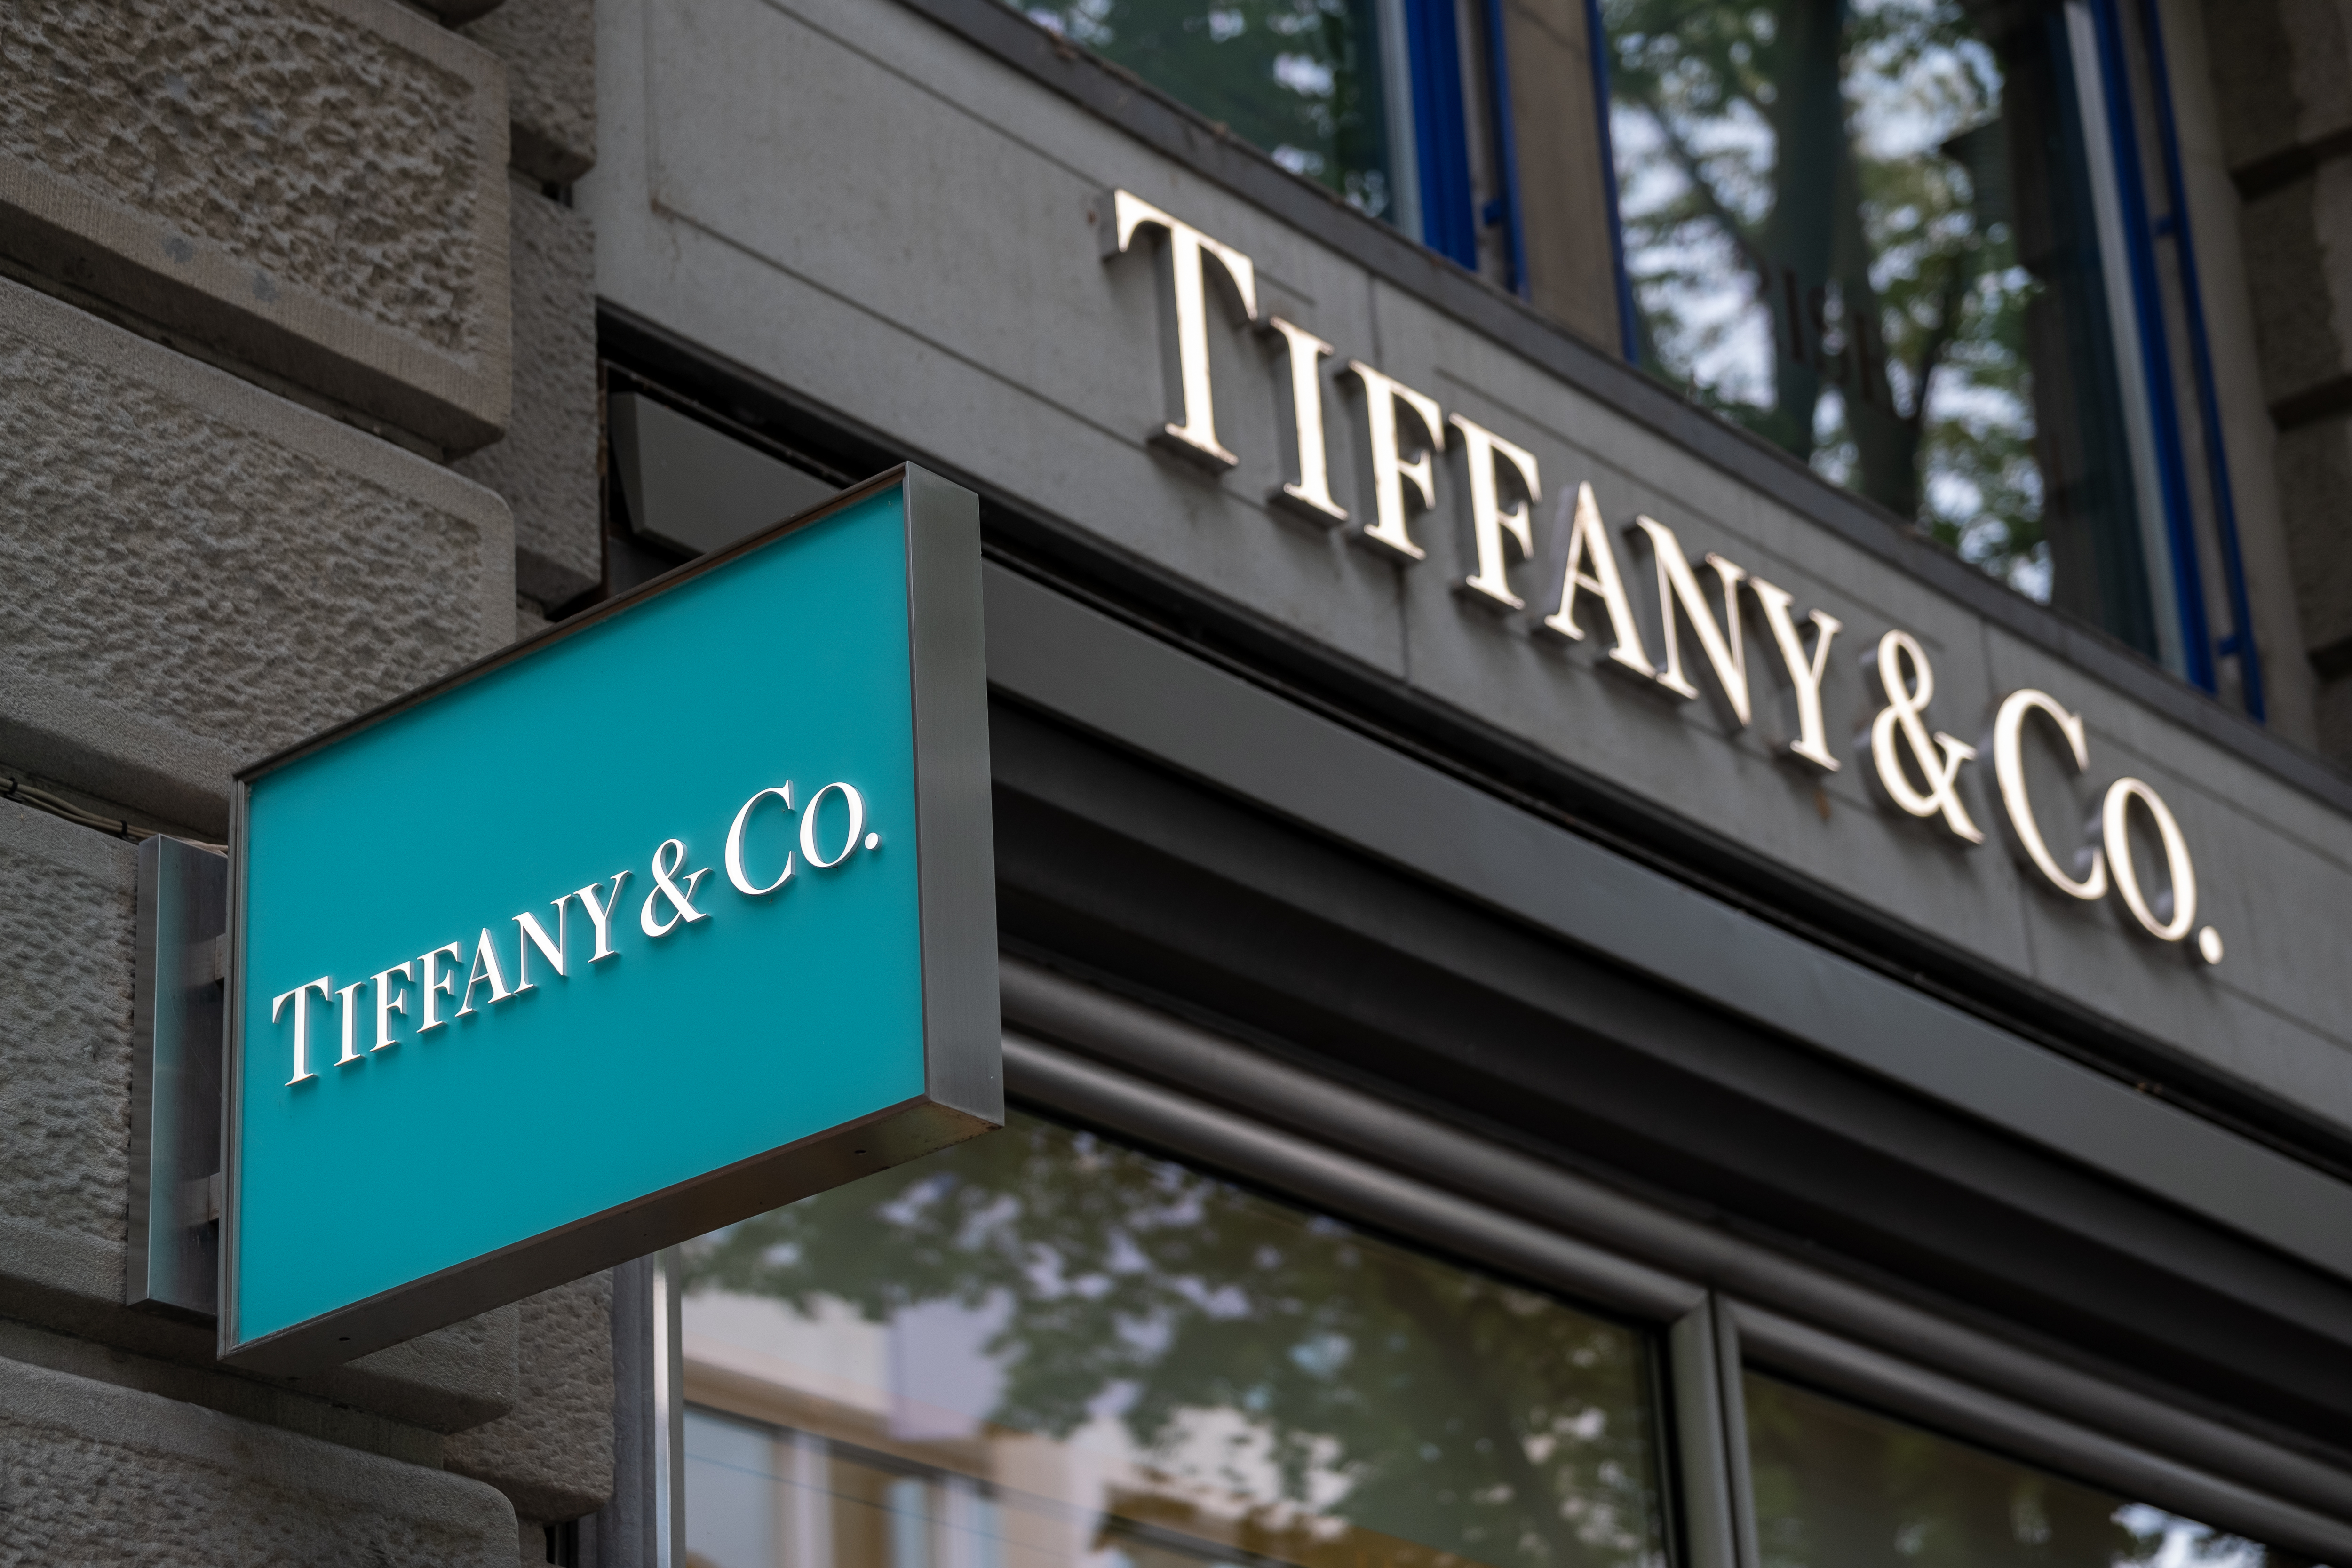 Tiffany & Co. 